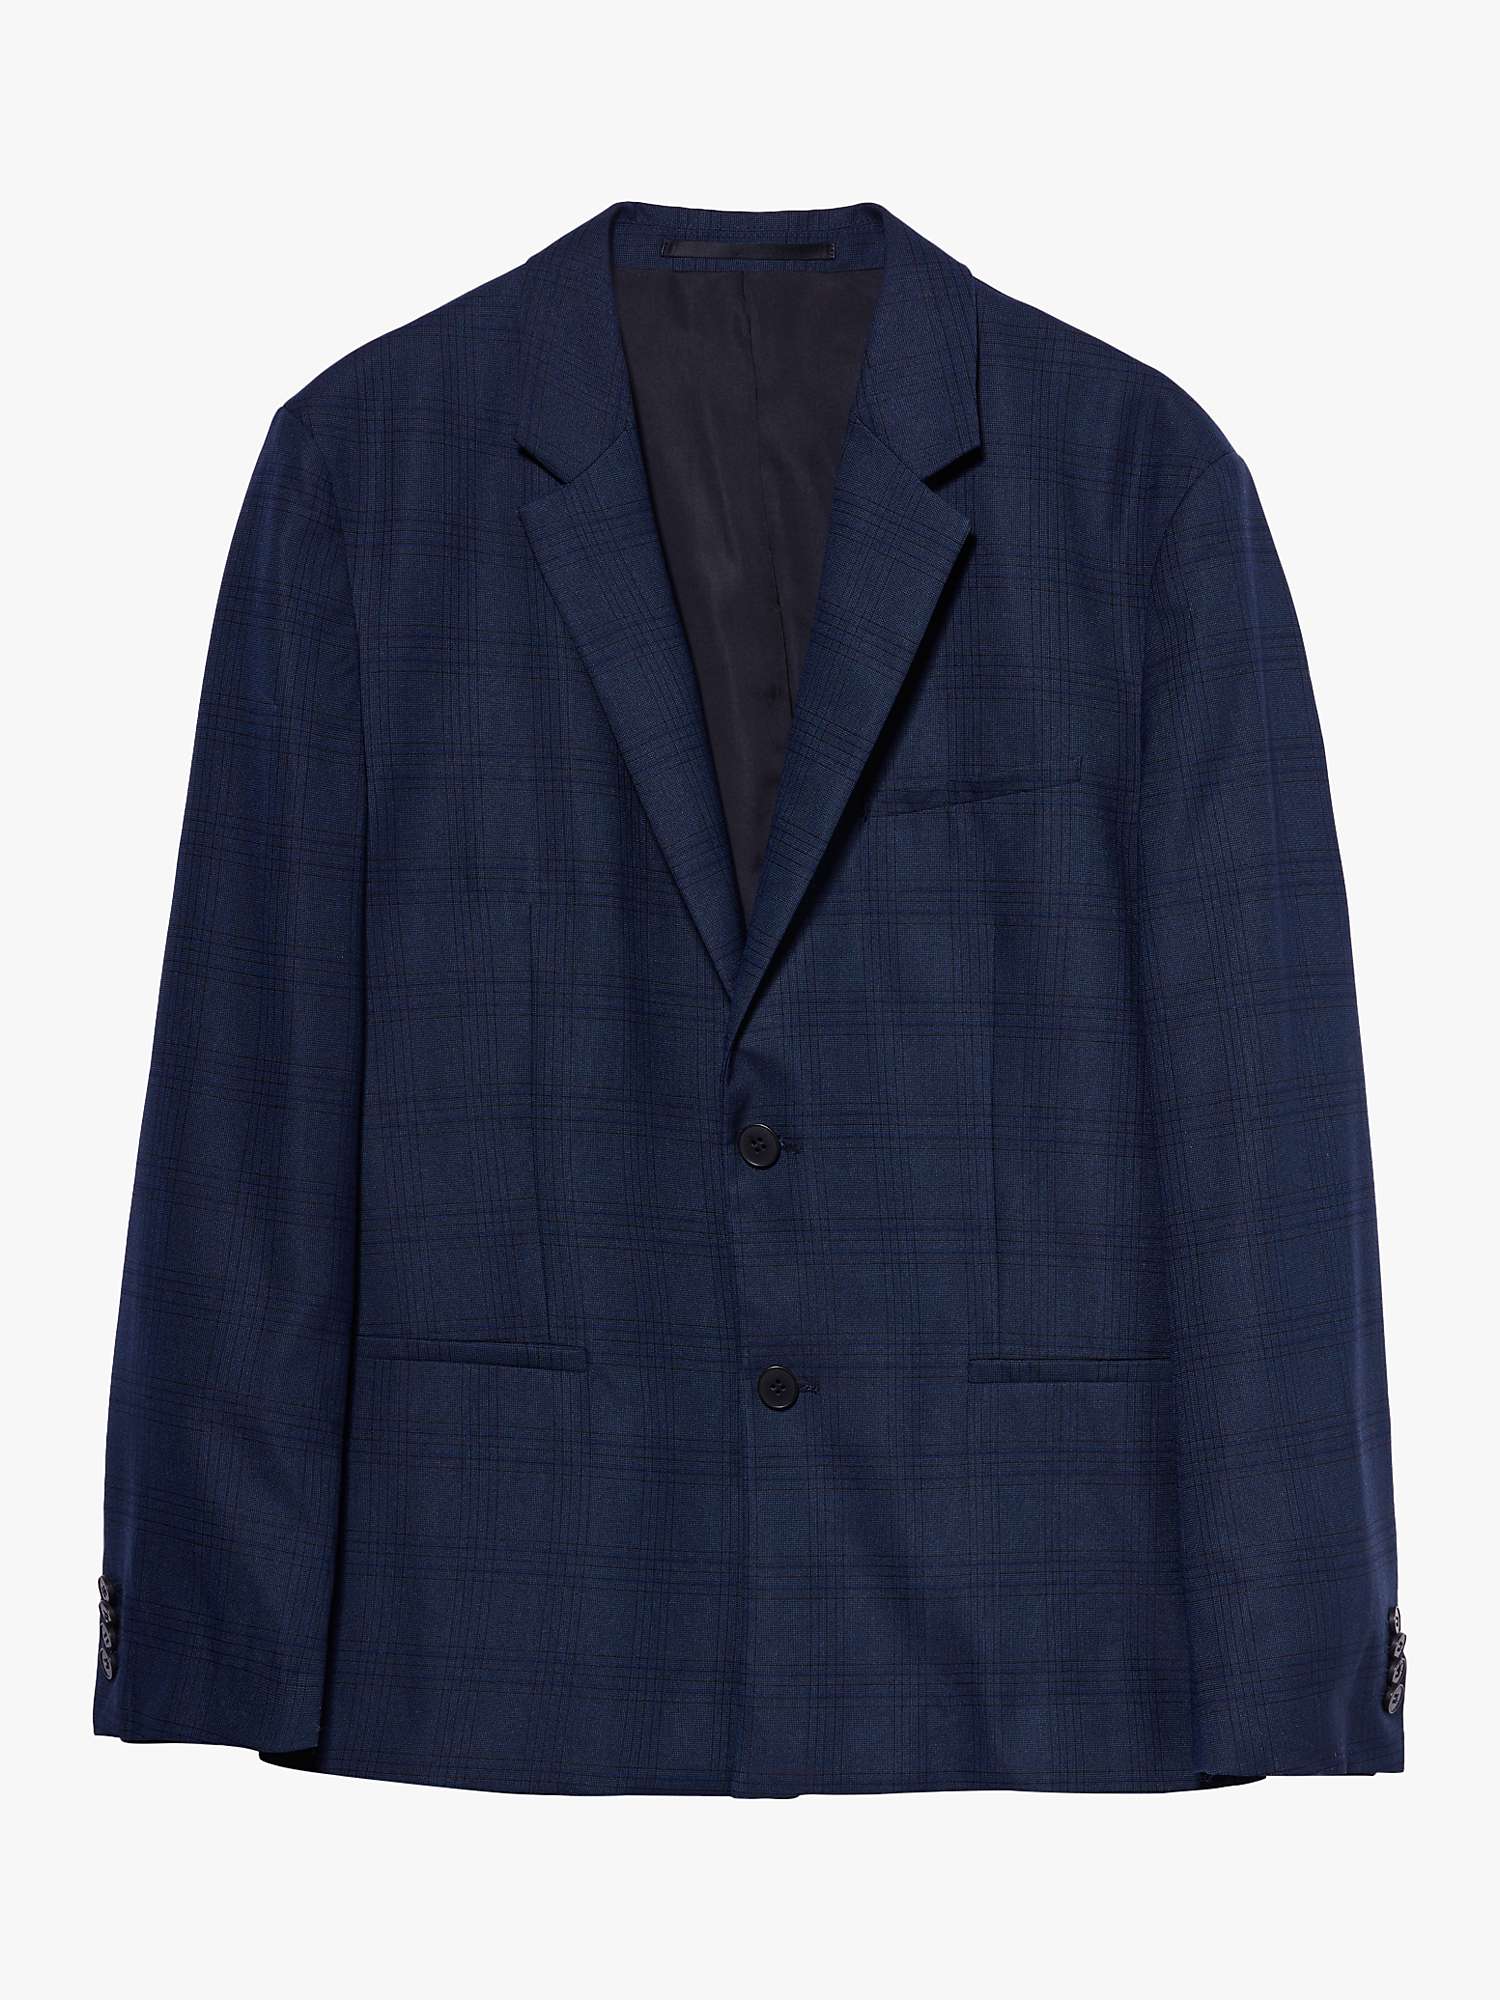 Buy SISLEY Single Breast Slim Fit Suit Jacket, Blue Online at johnlewis.com